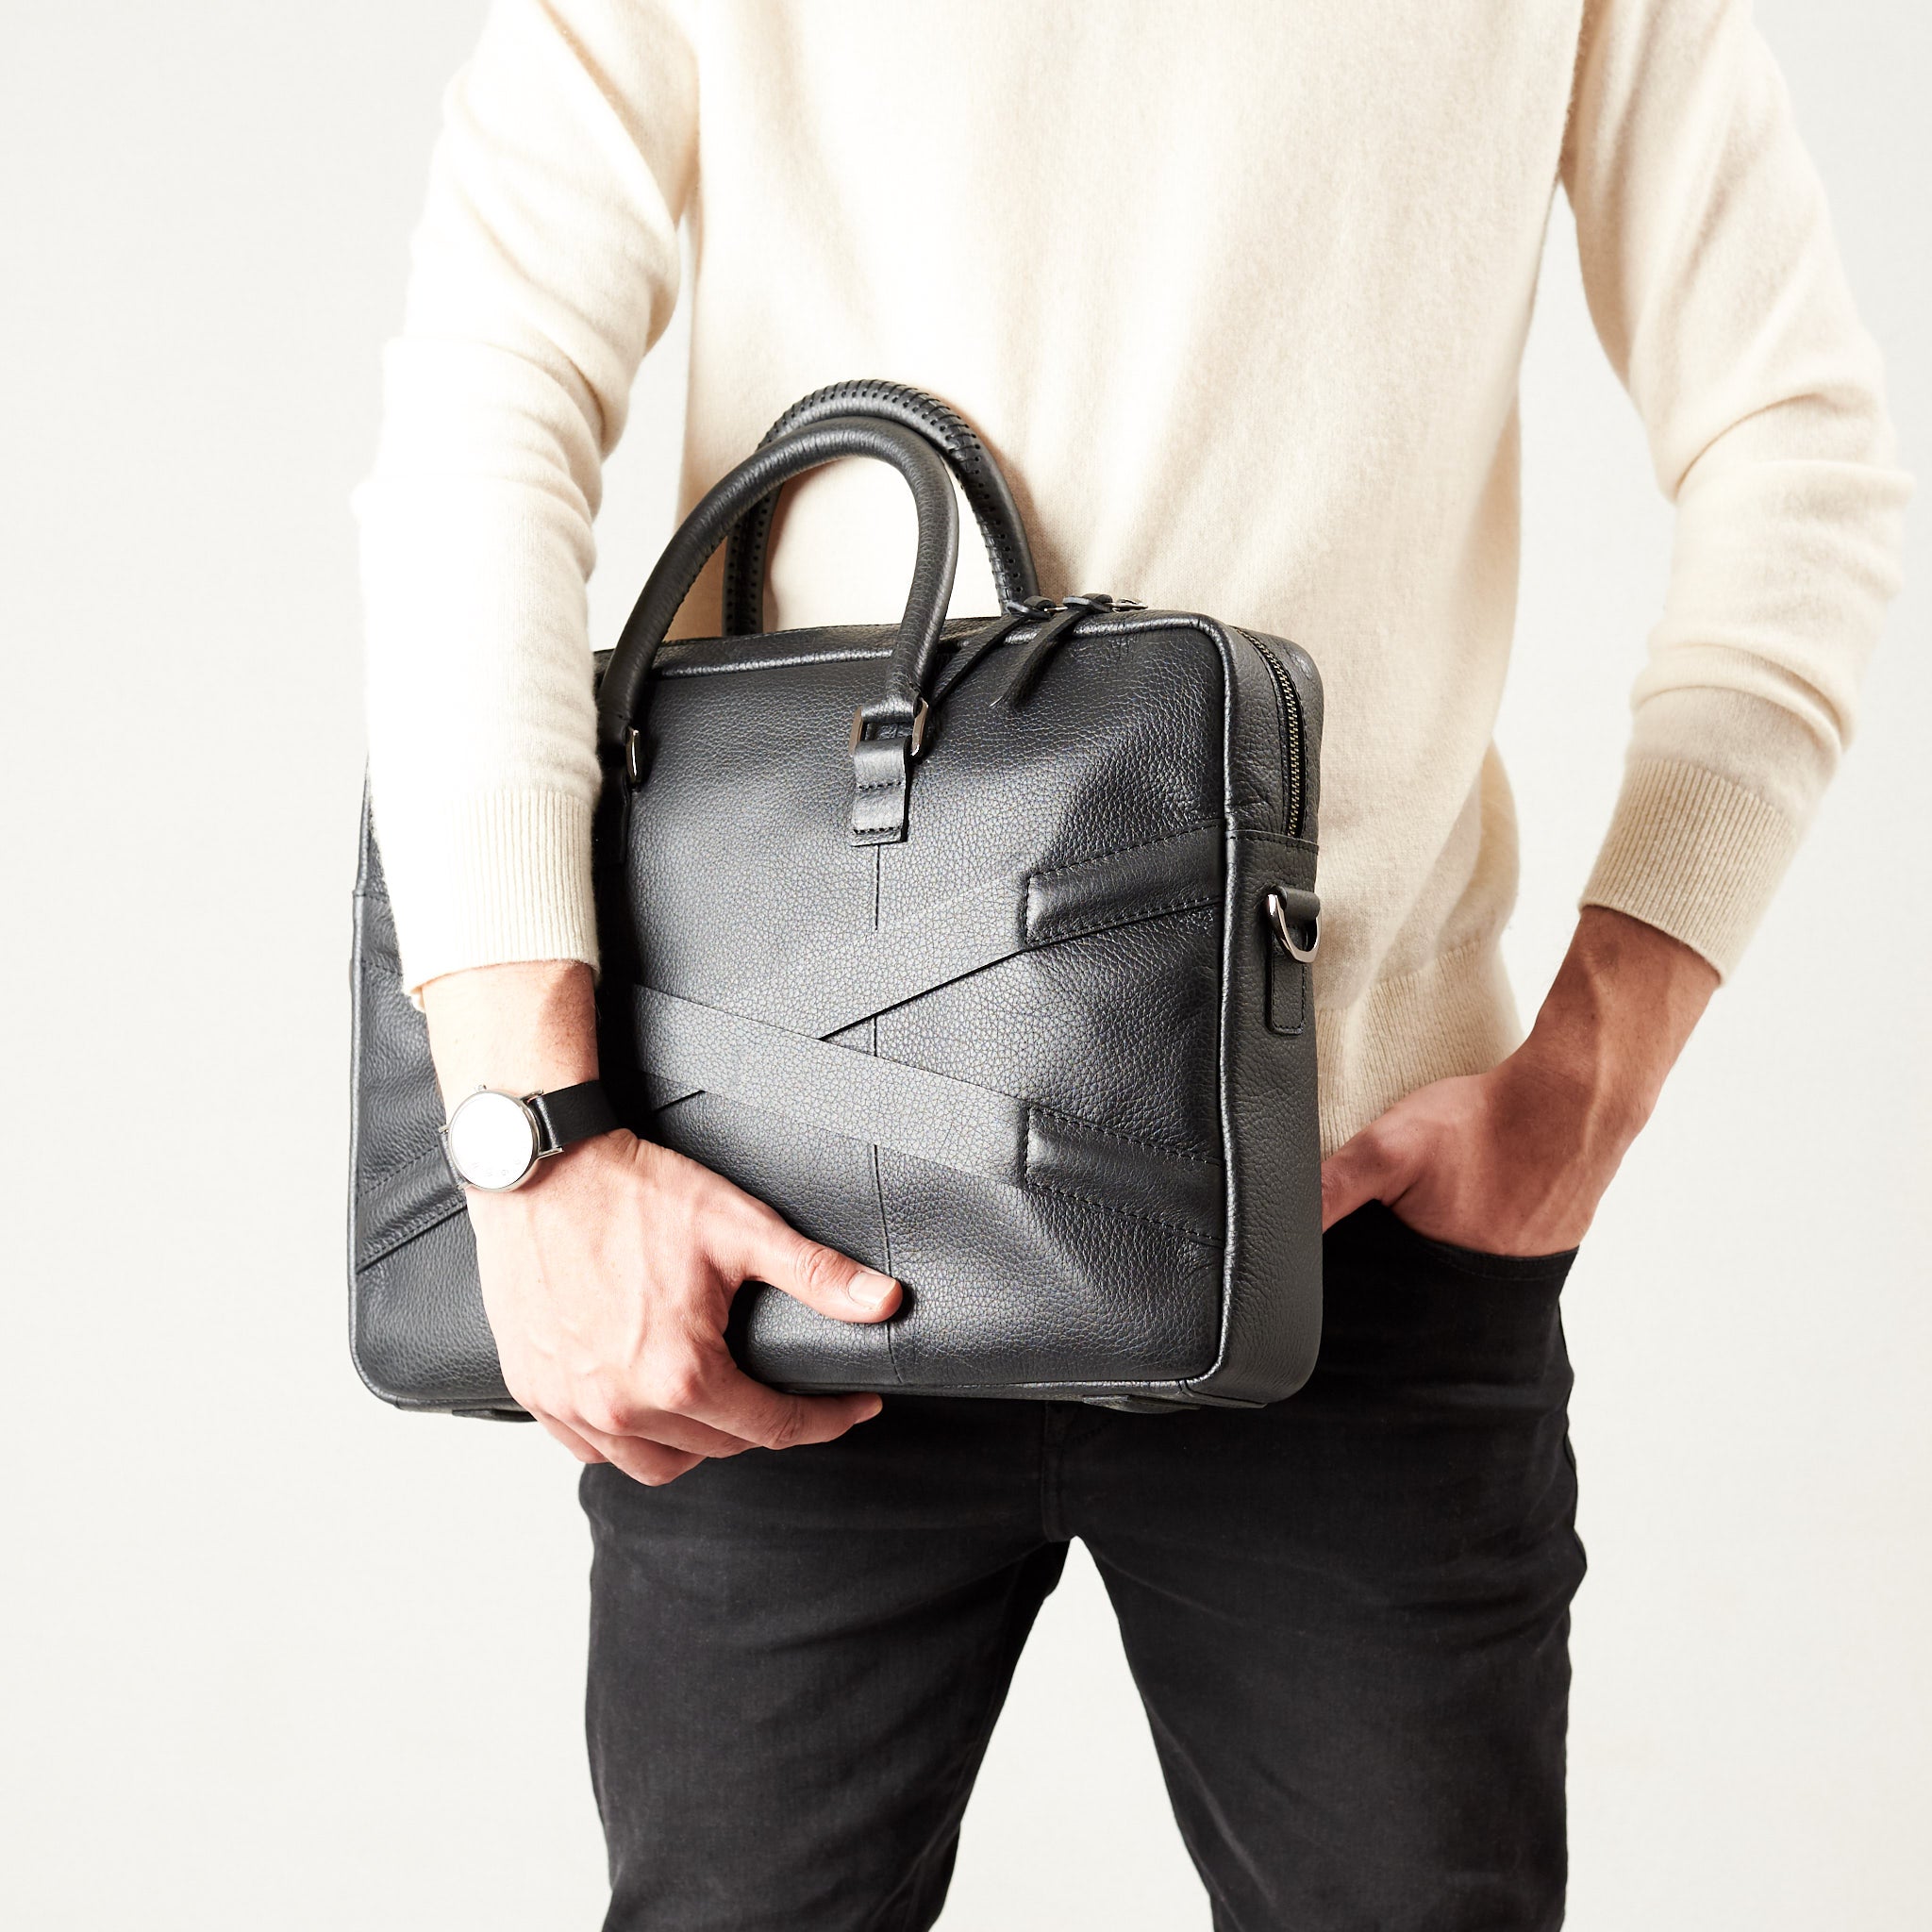 Shop Louis Vuitton Men's Business & Briefcases